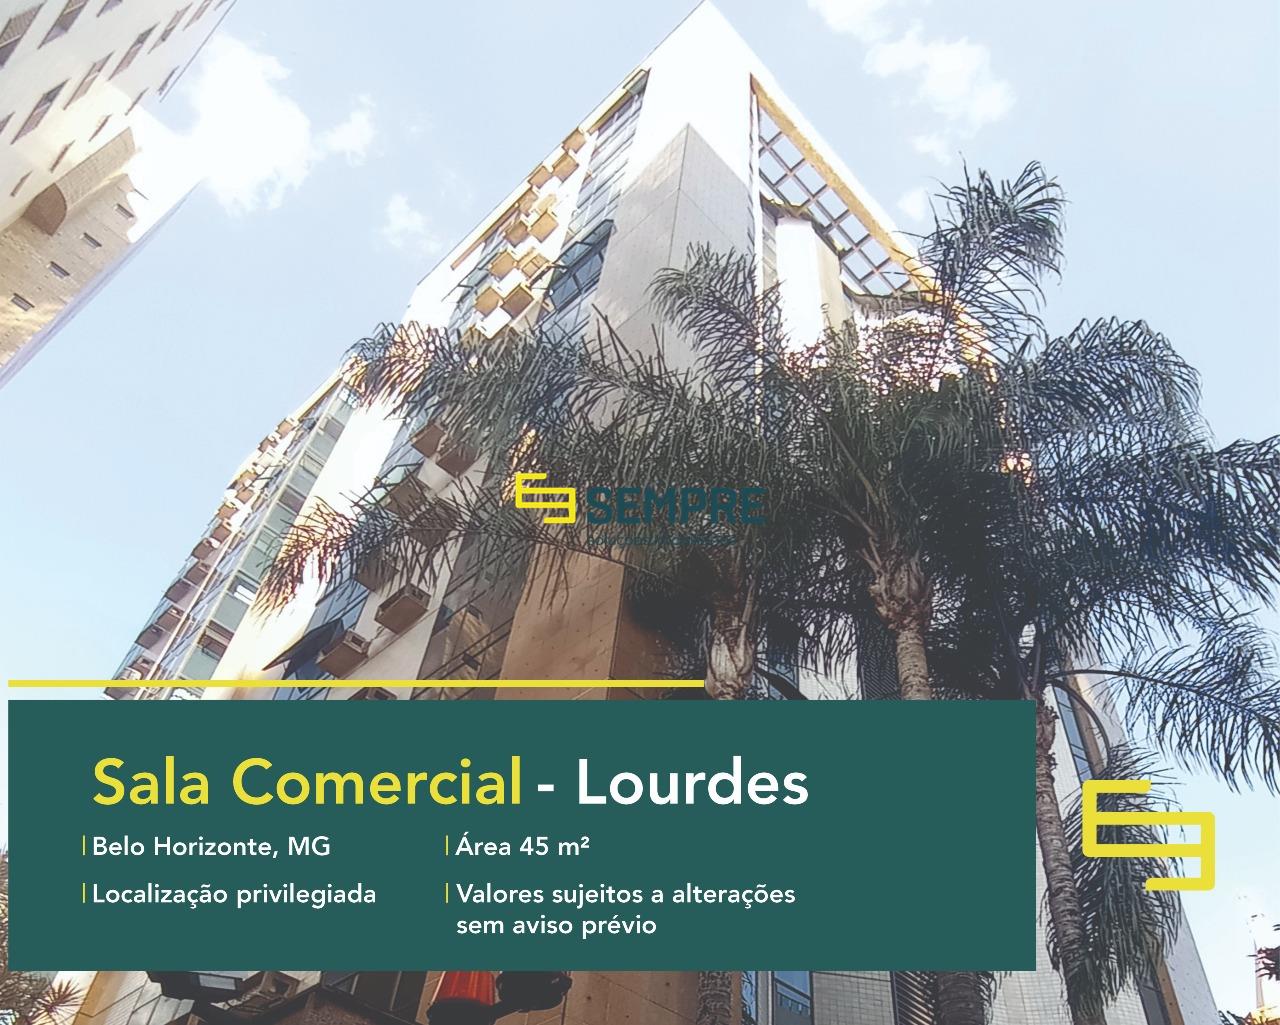 Sala comercial para alugar no Lourdes em Belo Horizonte, excelente localização. O estabelecimento comercial conta com área de 45 m².